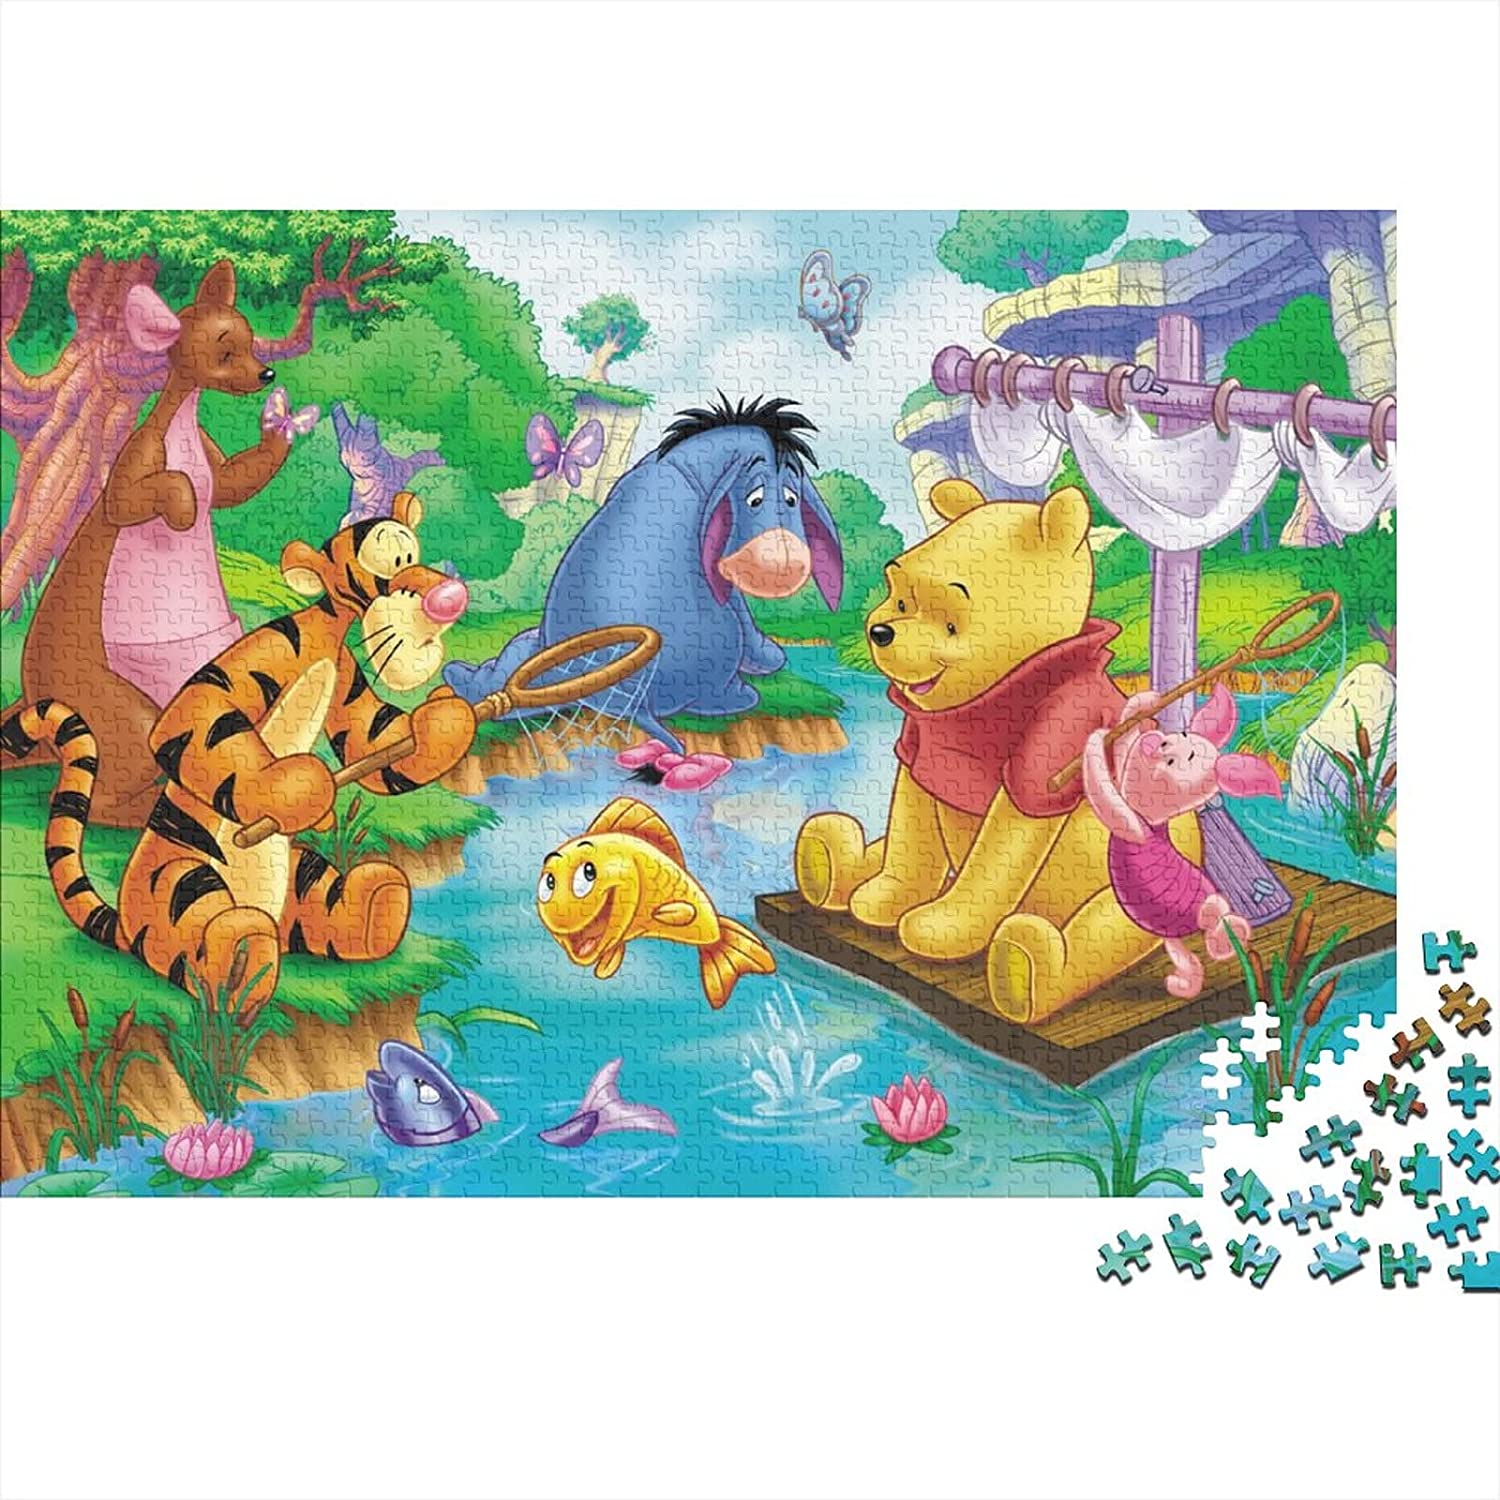 Puzzle de Winnie de Pooh y todos sus amigos 1000pc